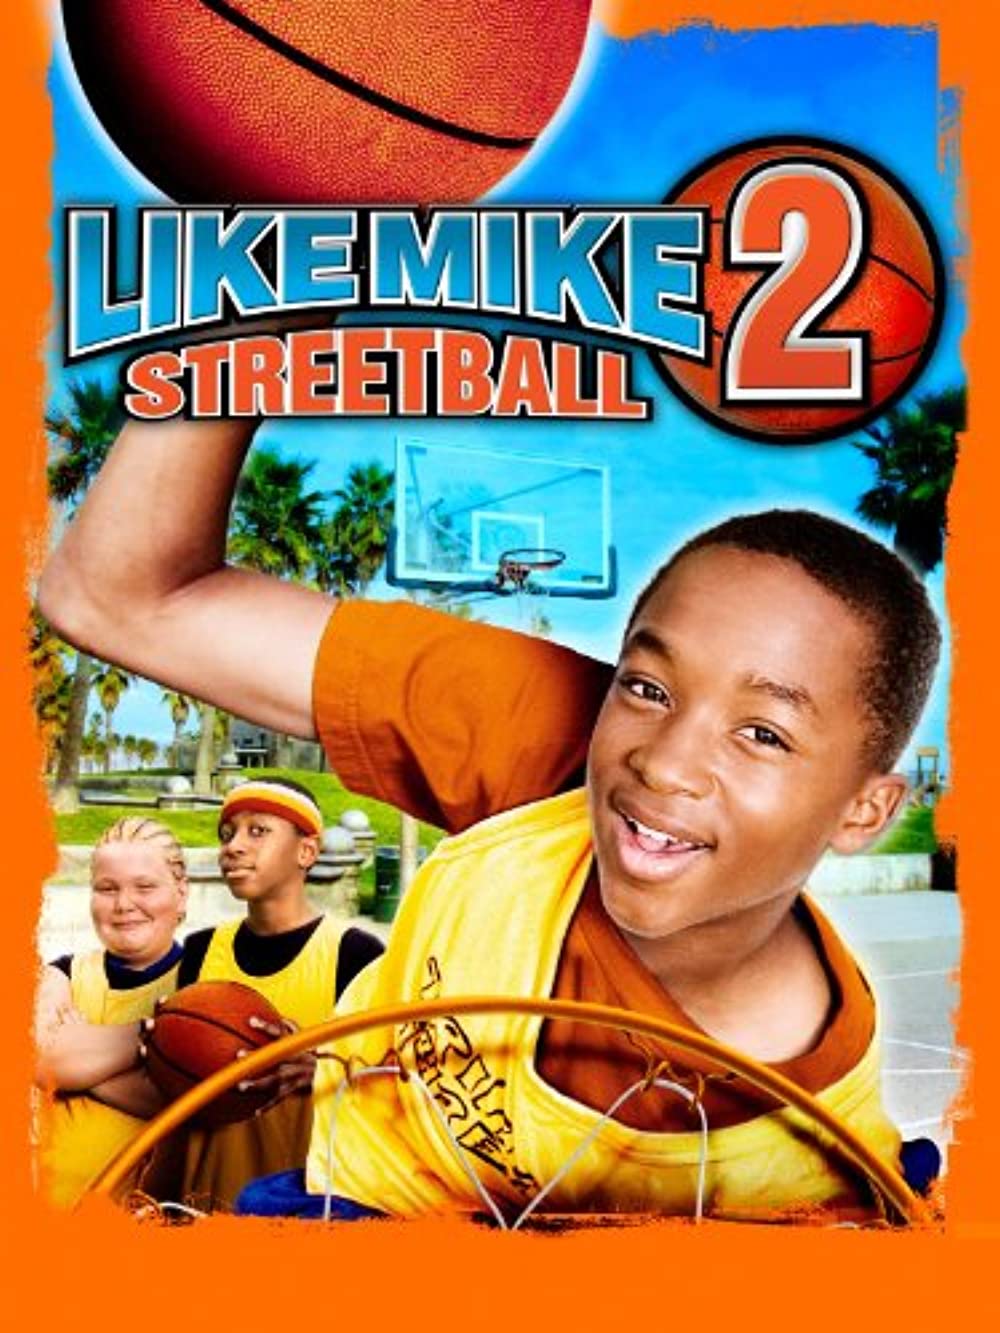 ดูหนังออนไลน์ฟรี Like Mike 2 Streetball (2006) เจ้าหนูพลังไมค์ 2 [Soundtrack]